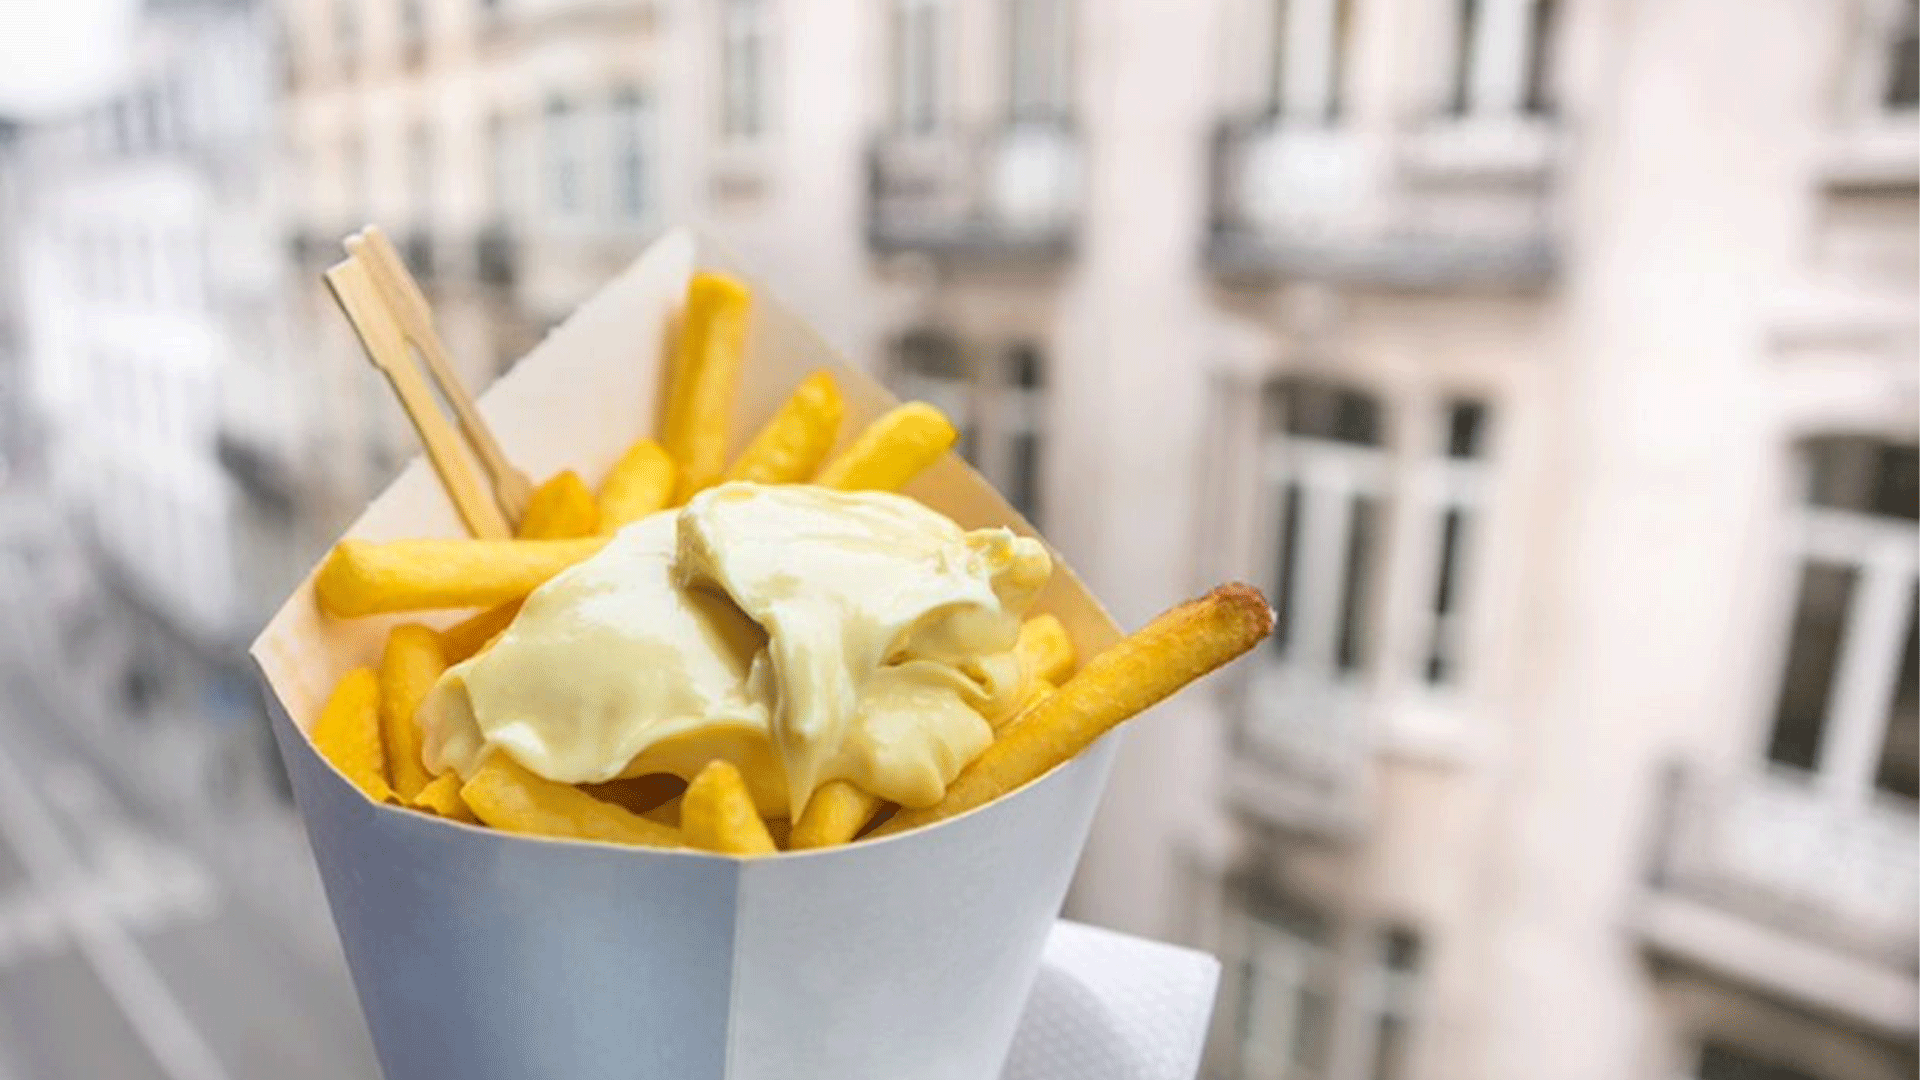 beligum-brussels-street-fries-mayo